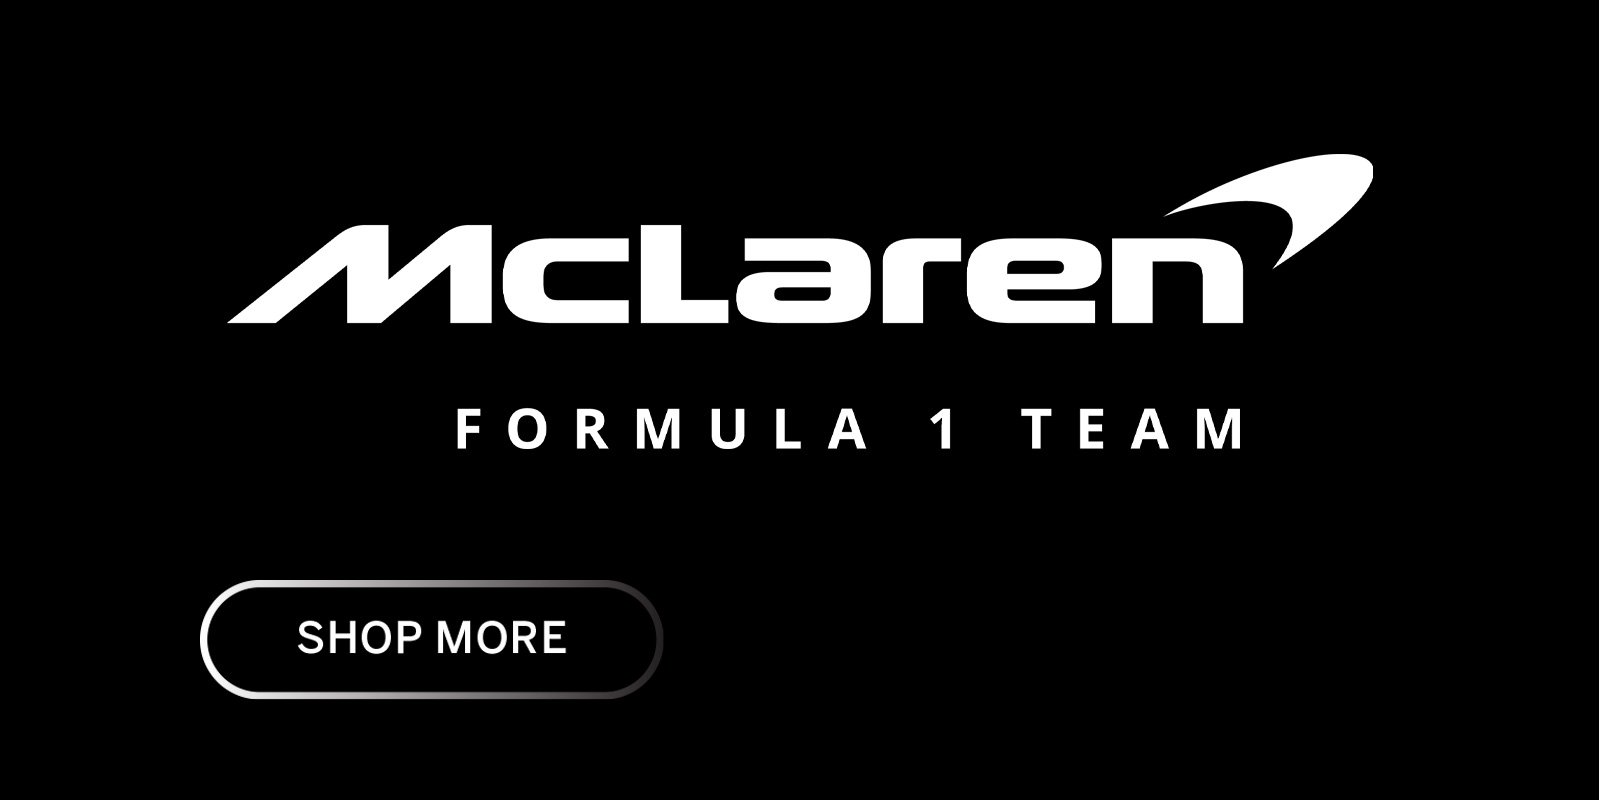 Mclaren F1 Team